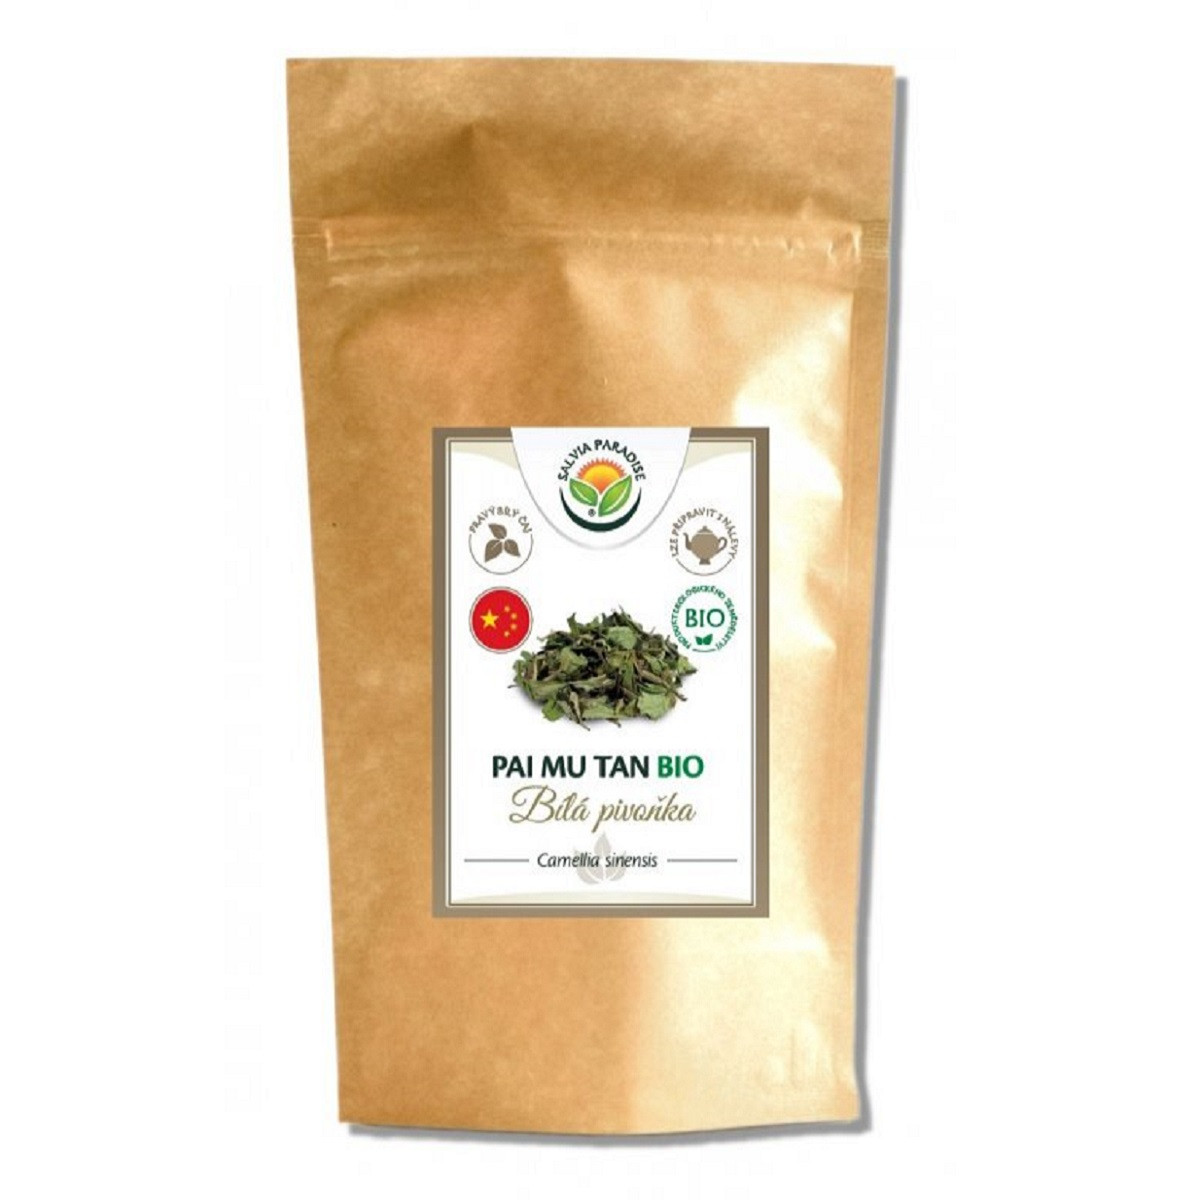 Pai Mu Tan BIO - Bílá pivoňka - Camellia sinensis - bio kvalita - 15 g